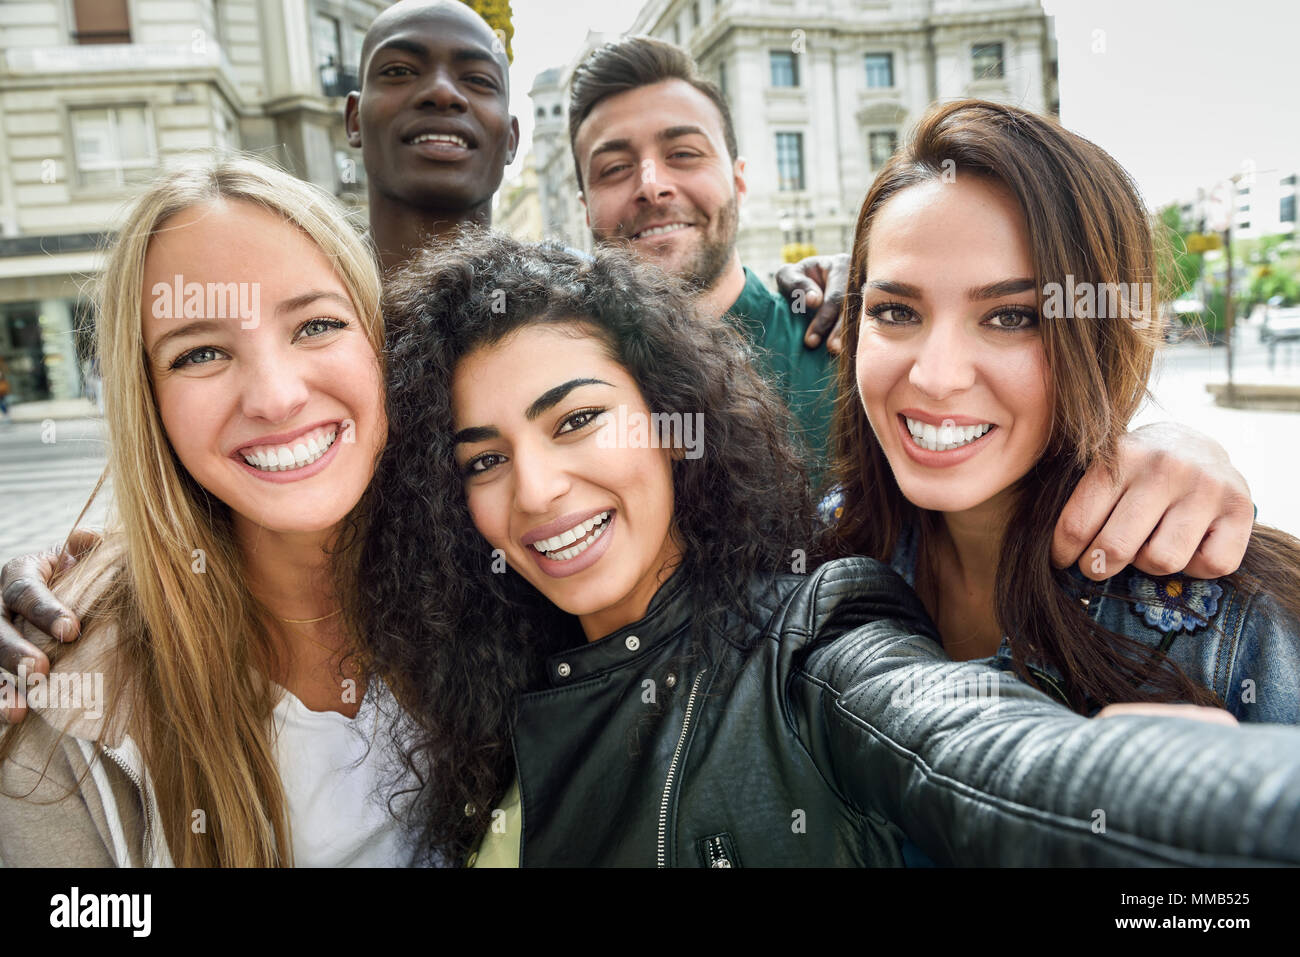 Gruppo multirazziale di amici prendendo selfie in una strada urbana con una donna musulmana in primo piano. Tre giovani donne e due uomini che indossano un abbigliamento informale. Foto Stock